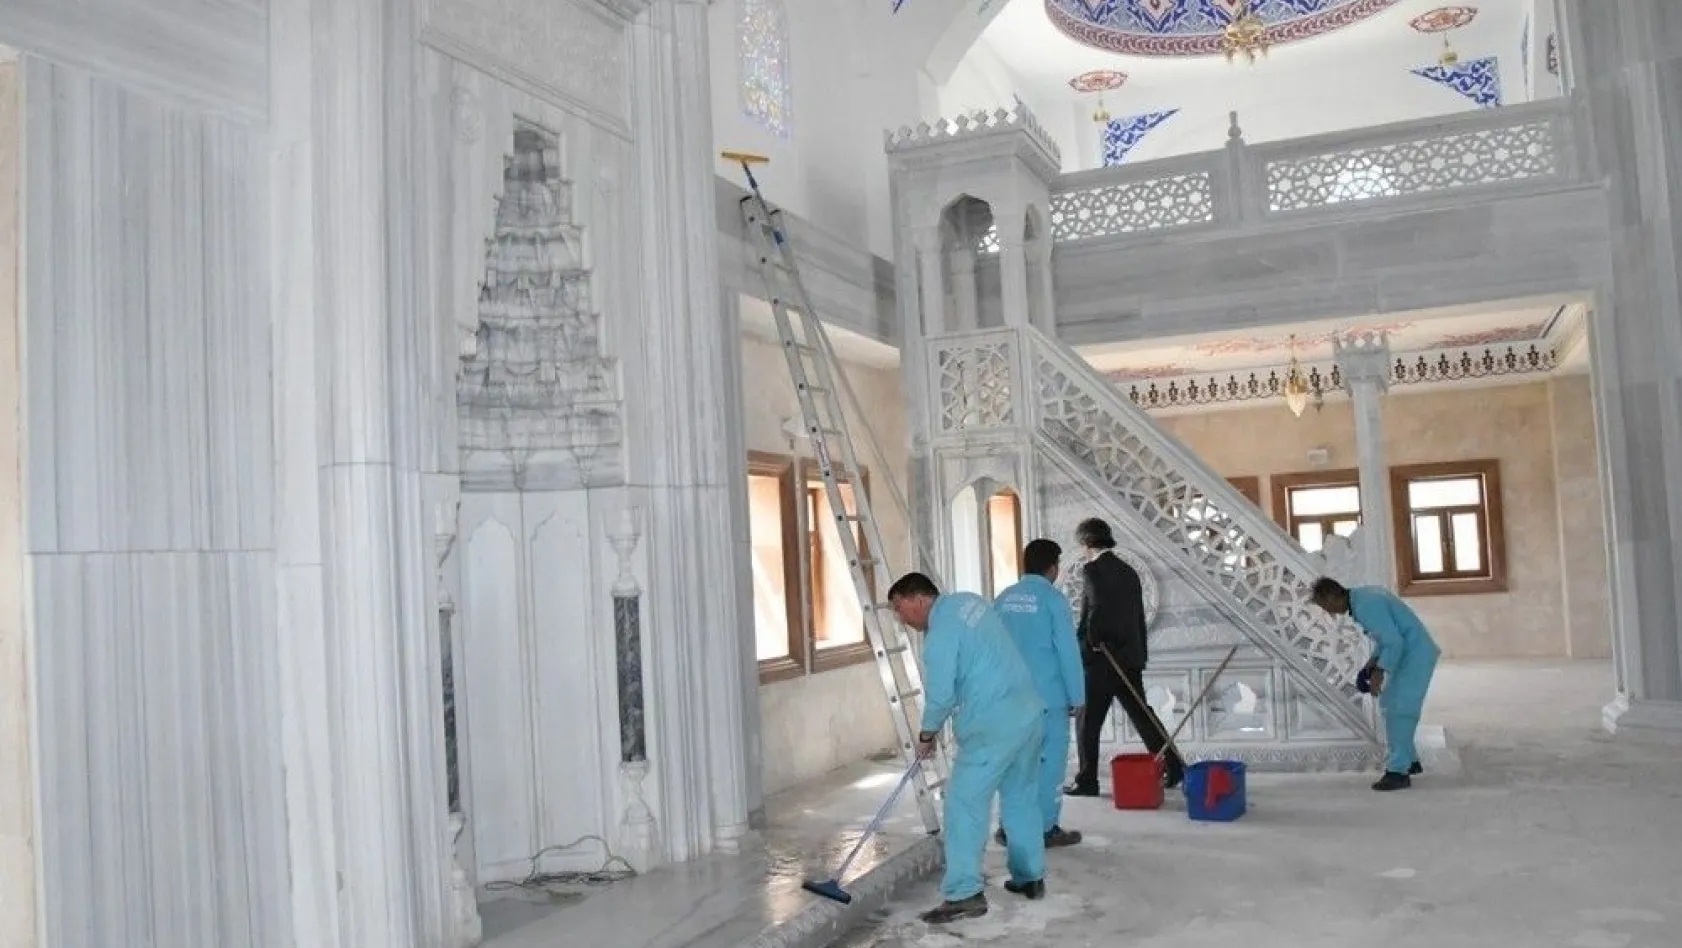 Adıyaman Üniversitesi Camii Ramazan Ayında ibadete açılacak
